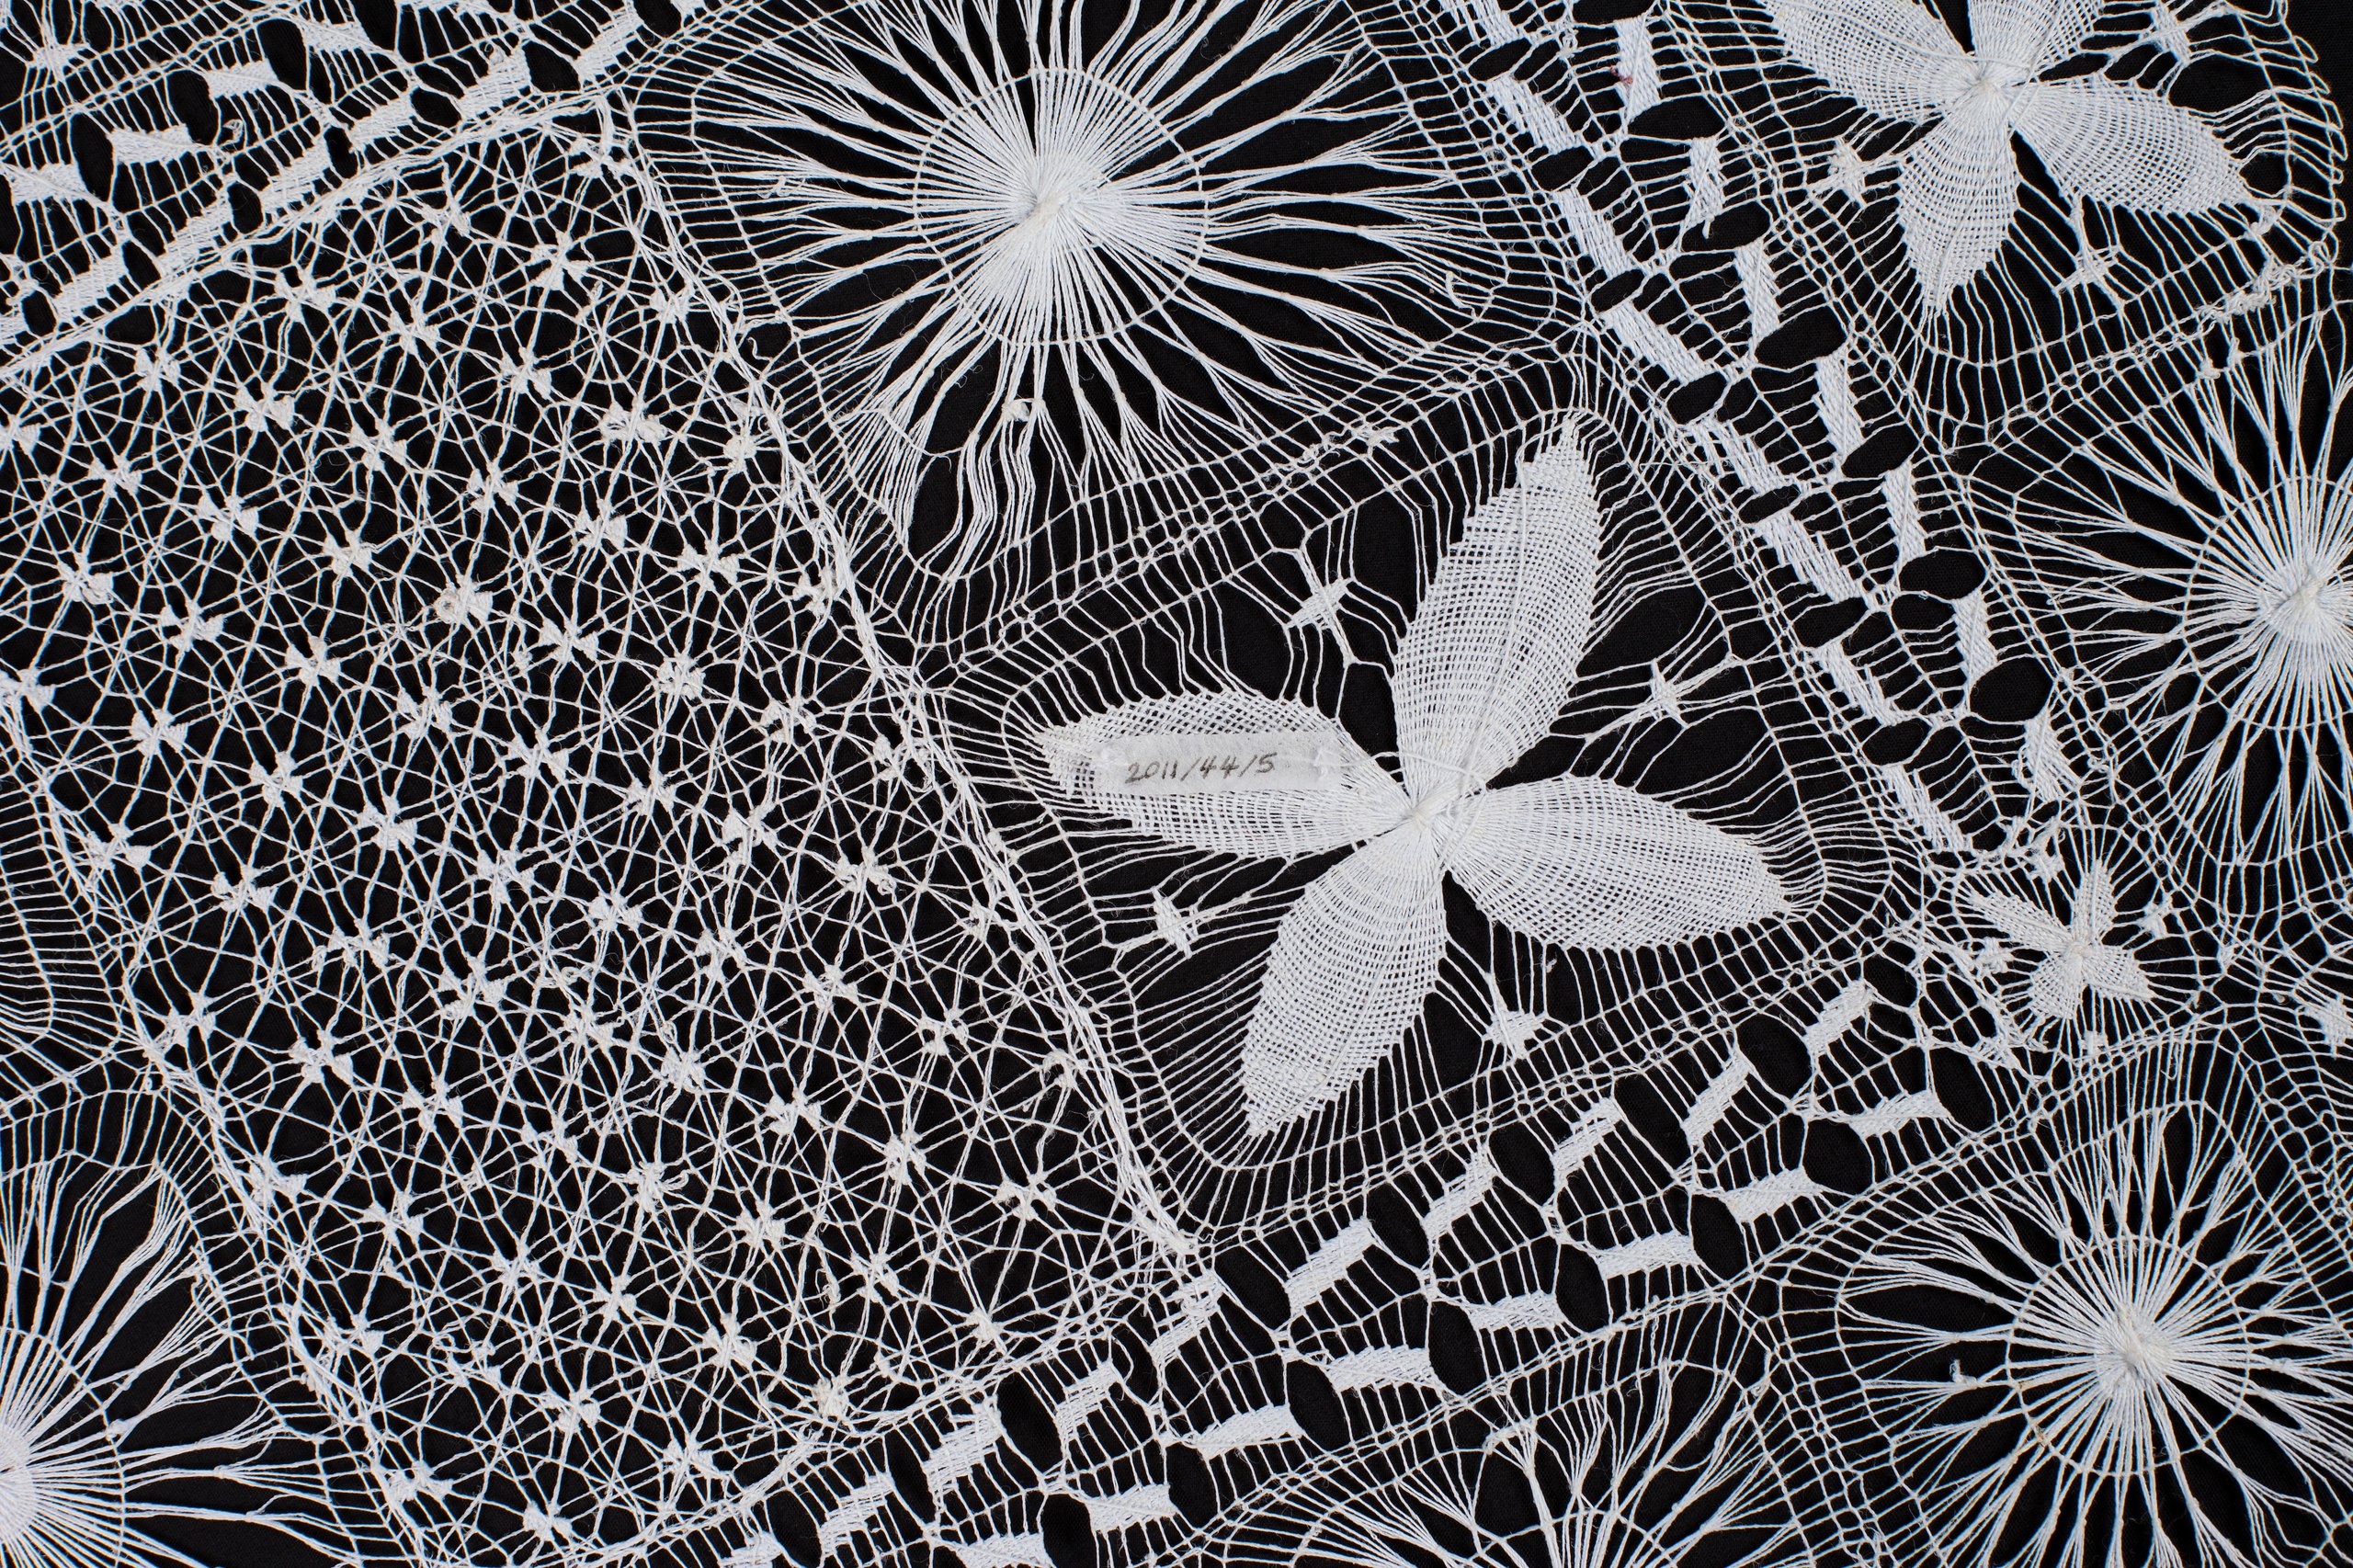 Nanduti (needle-weave) lace mat